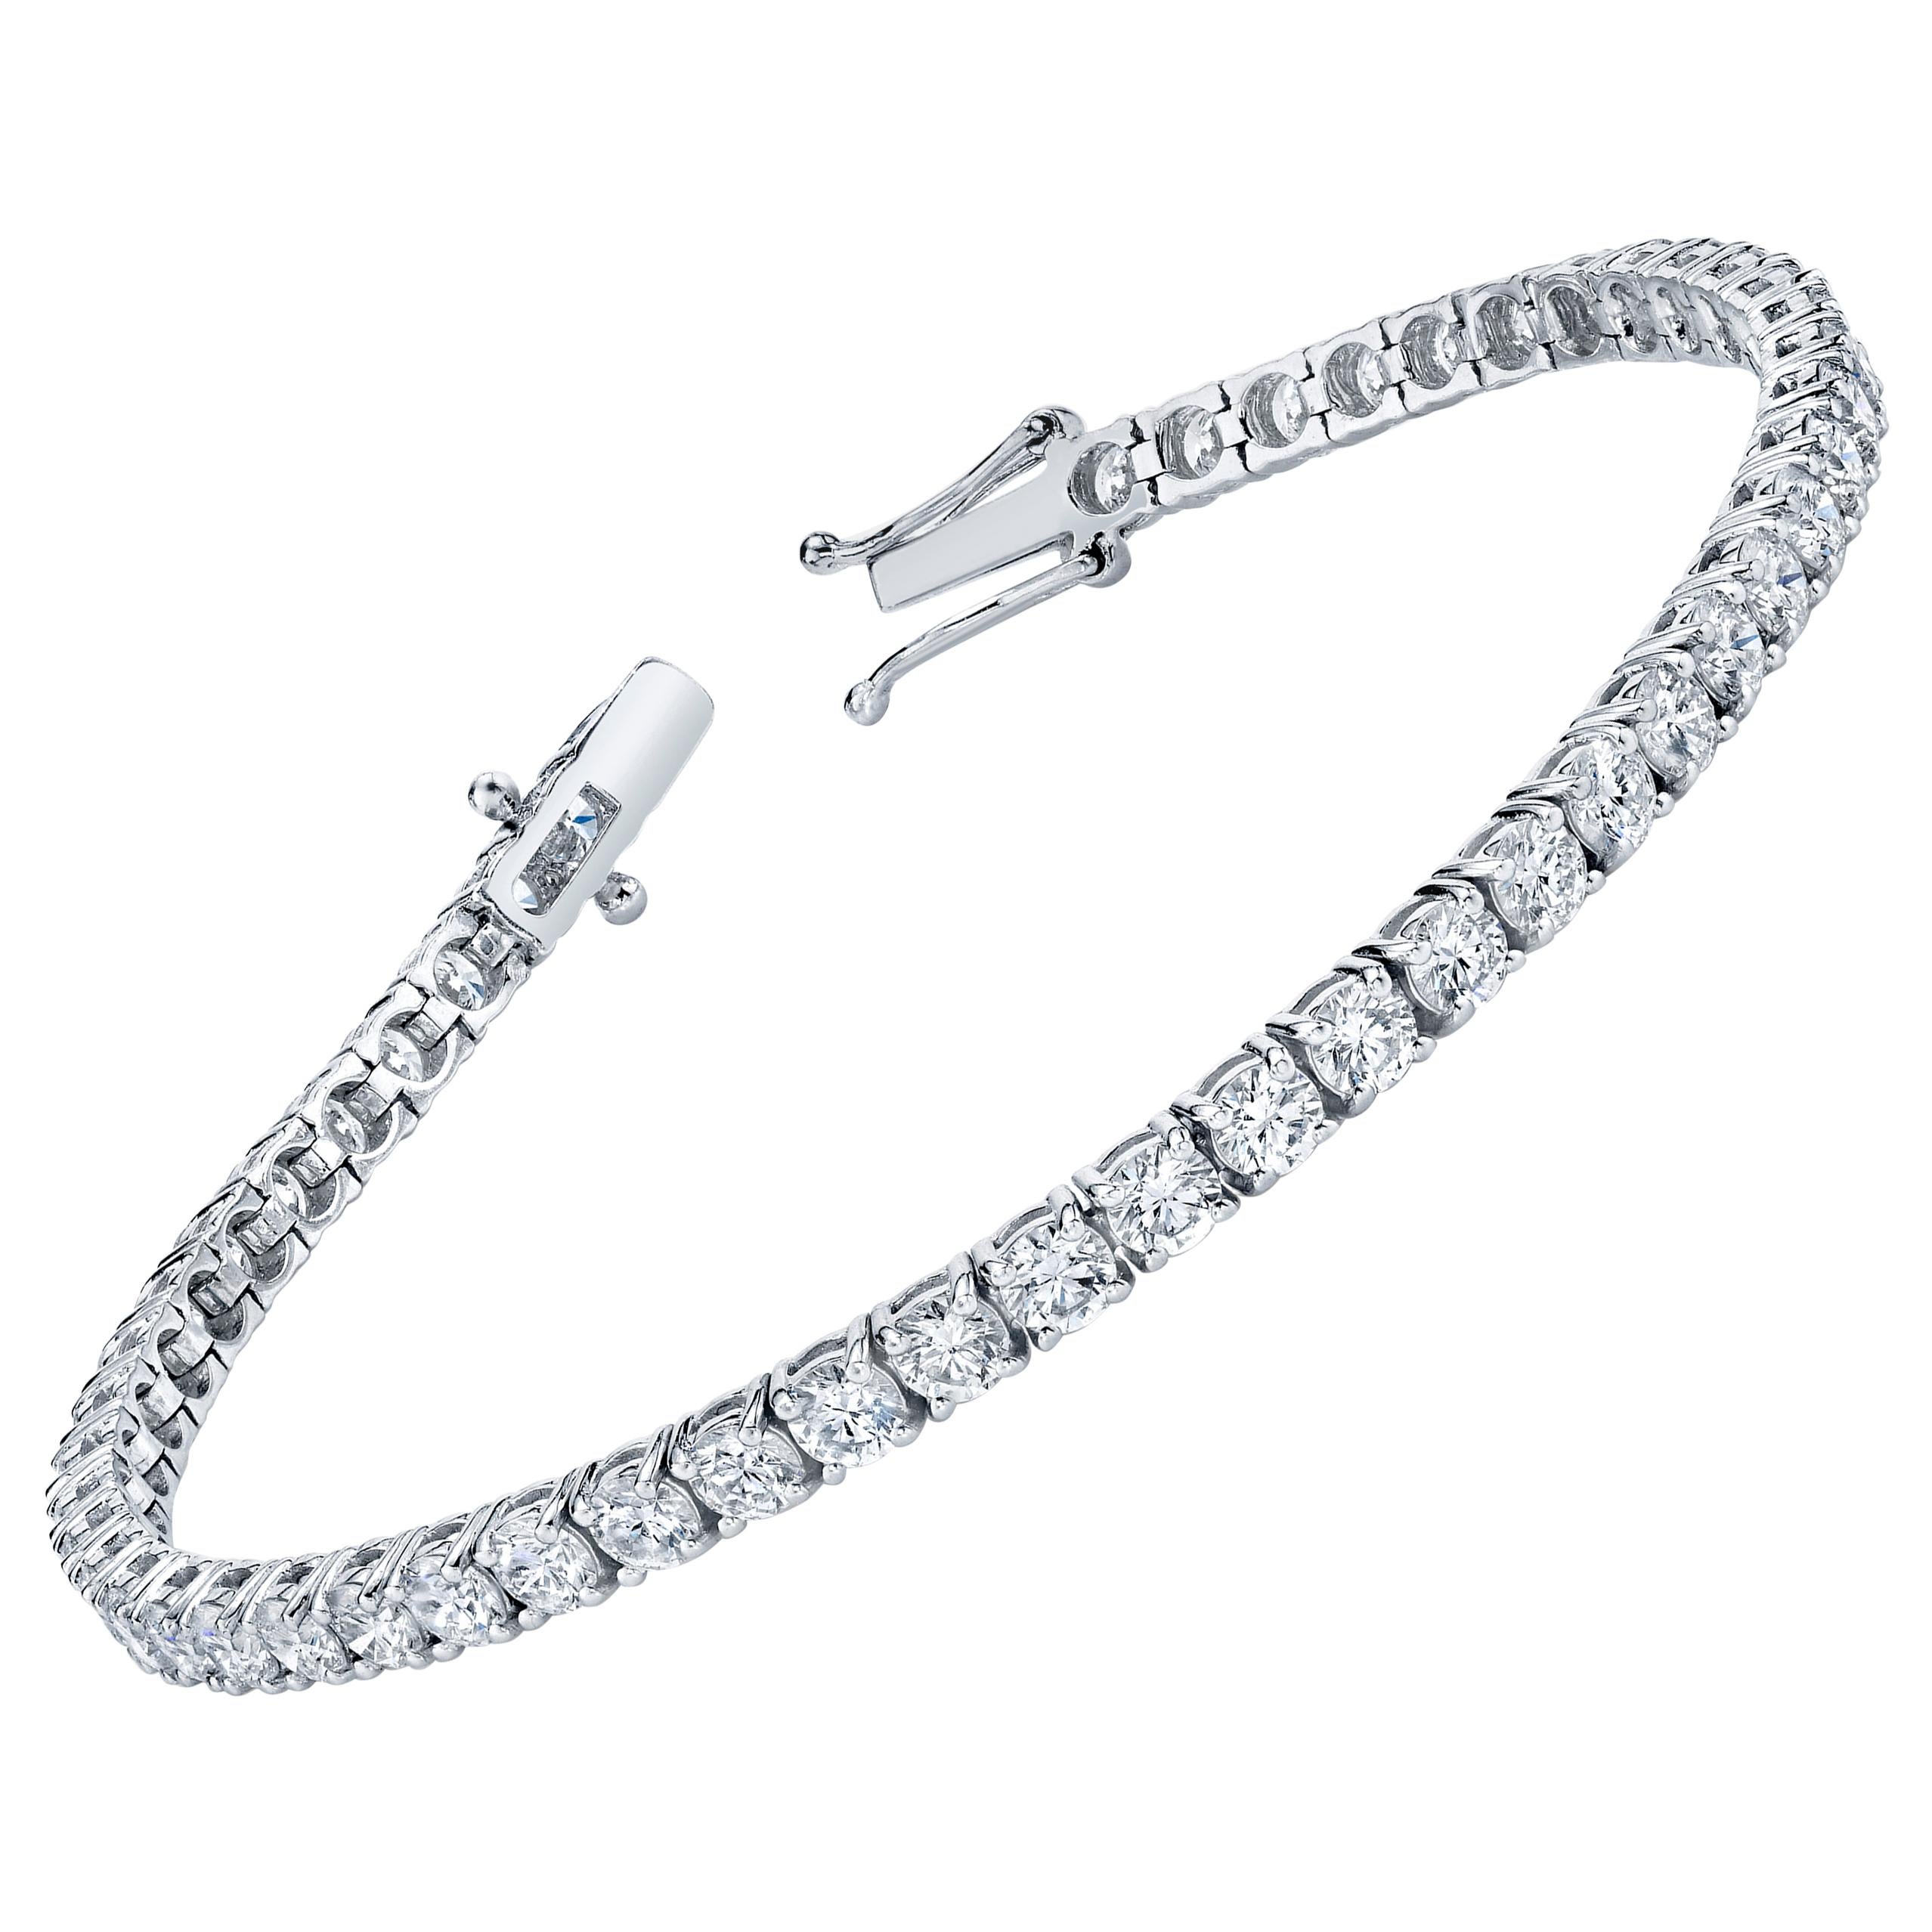 Bracelet de diamants ronds taille brillant en ligne droite